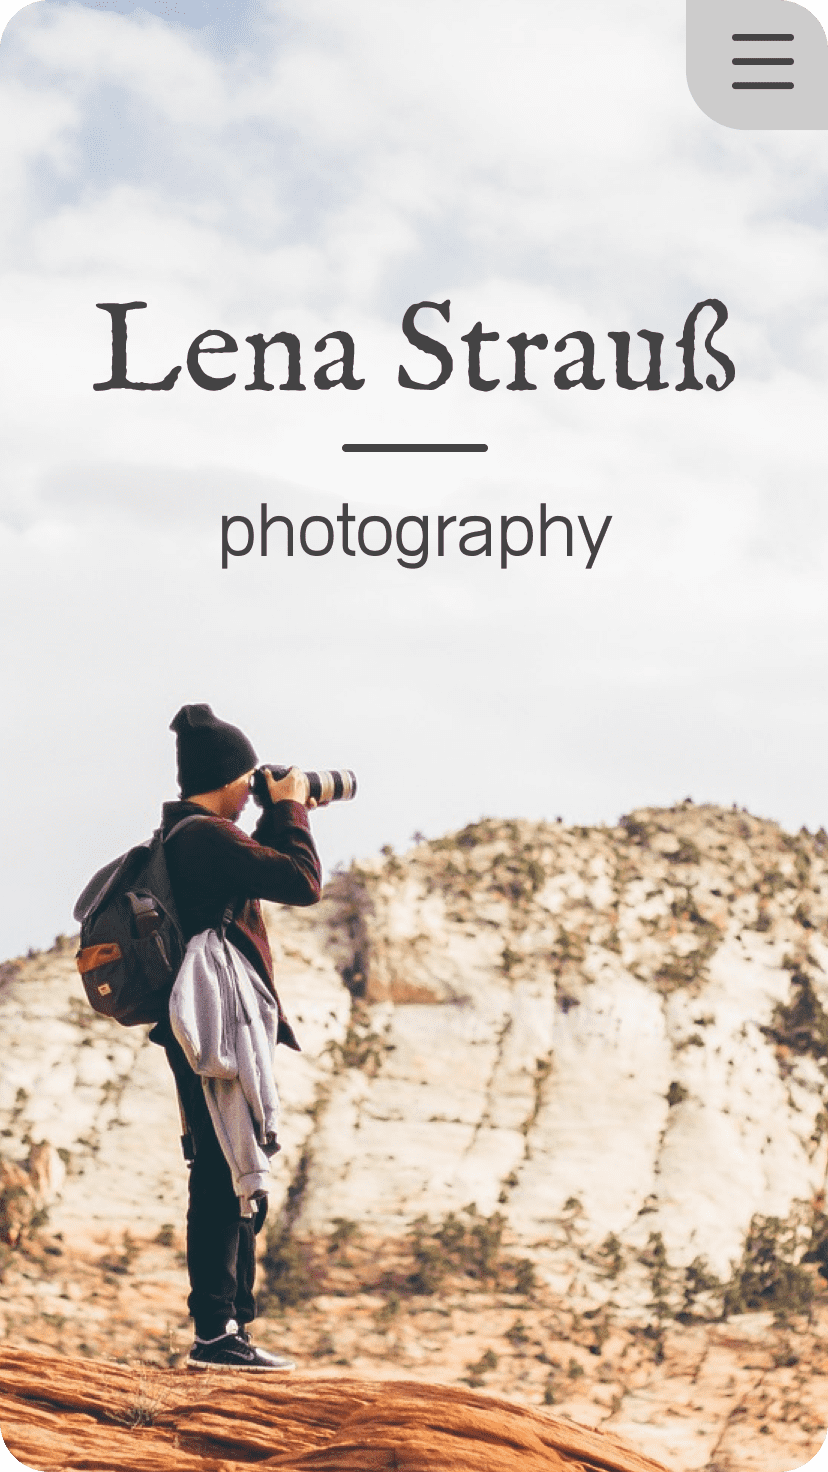 Vorschaubild der Startseite von LenaStrauß Photography im Smartphone Modus